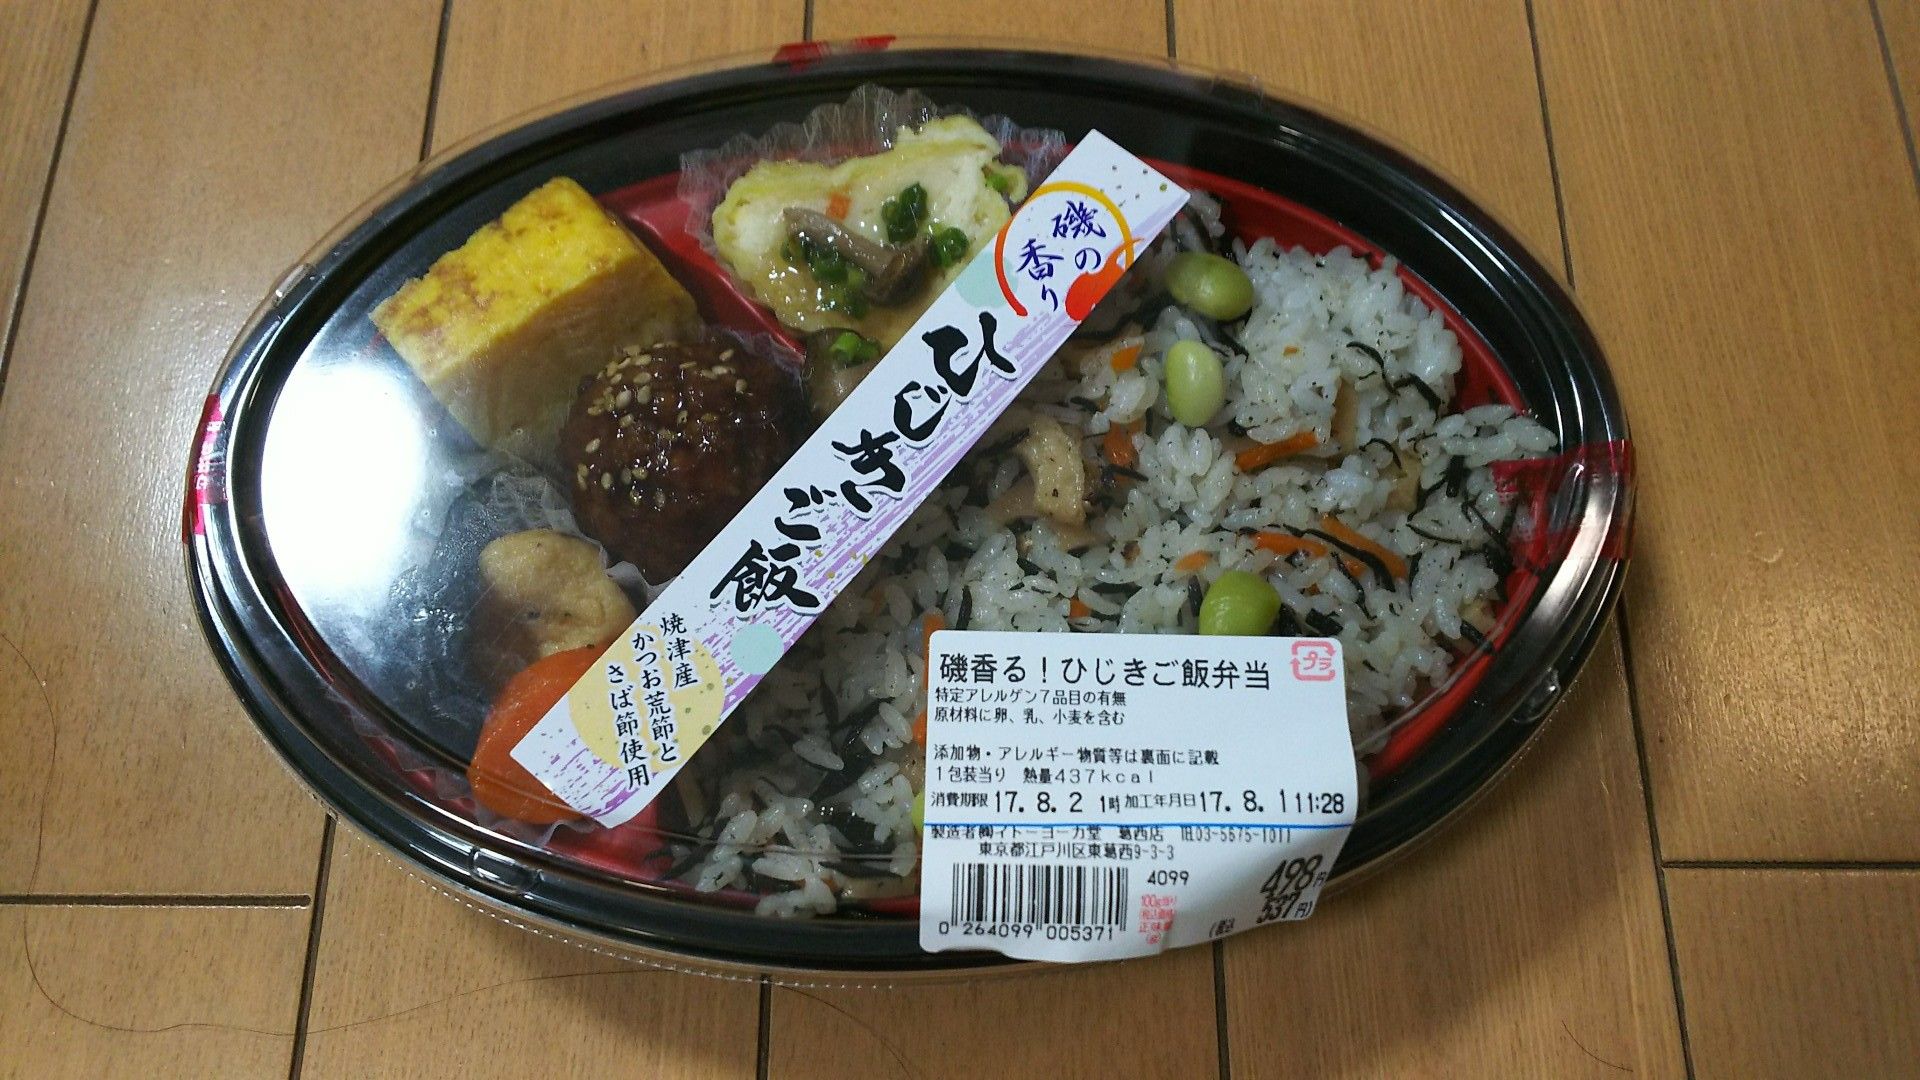 スーパーお弁当 お惣菜 イトーヨーカドー 5 雪月花 凸凹 雑記帖 楽天ブログ